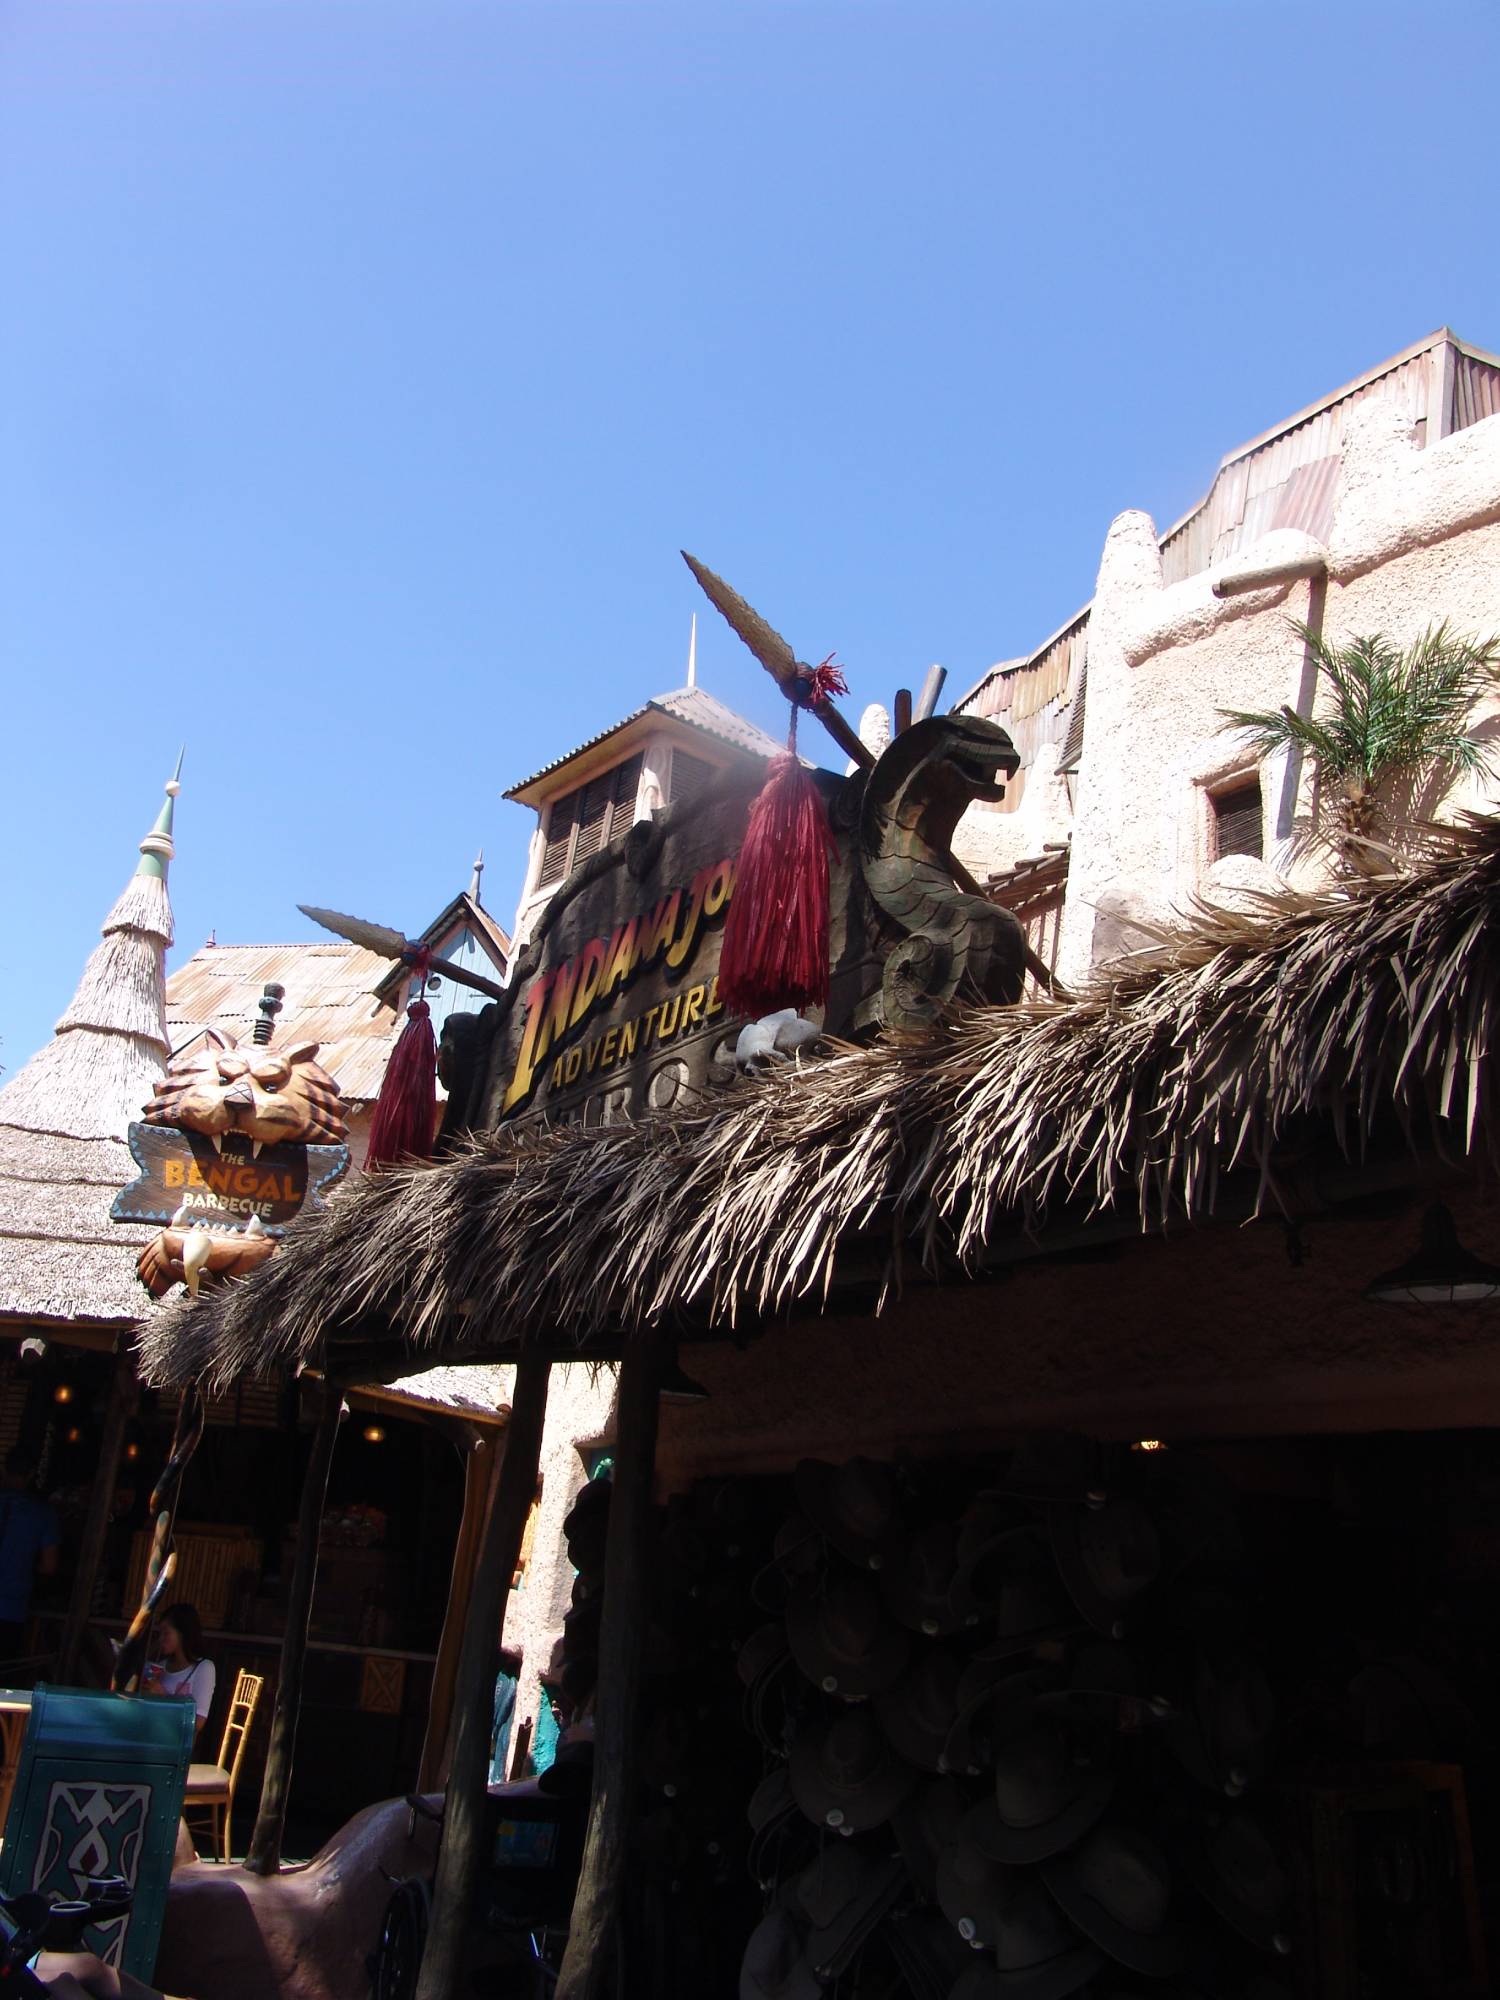 Disneyland Park - Indiana Jones Adventure shop